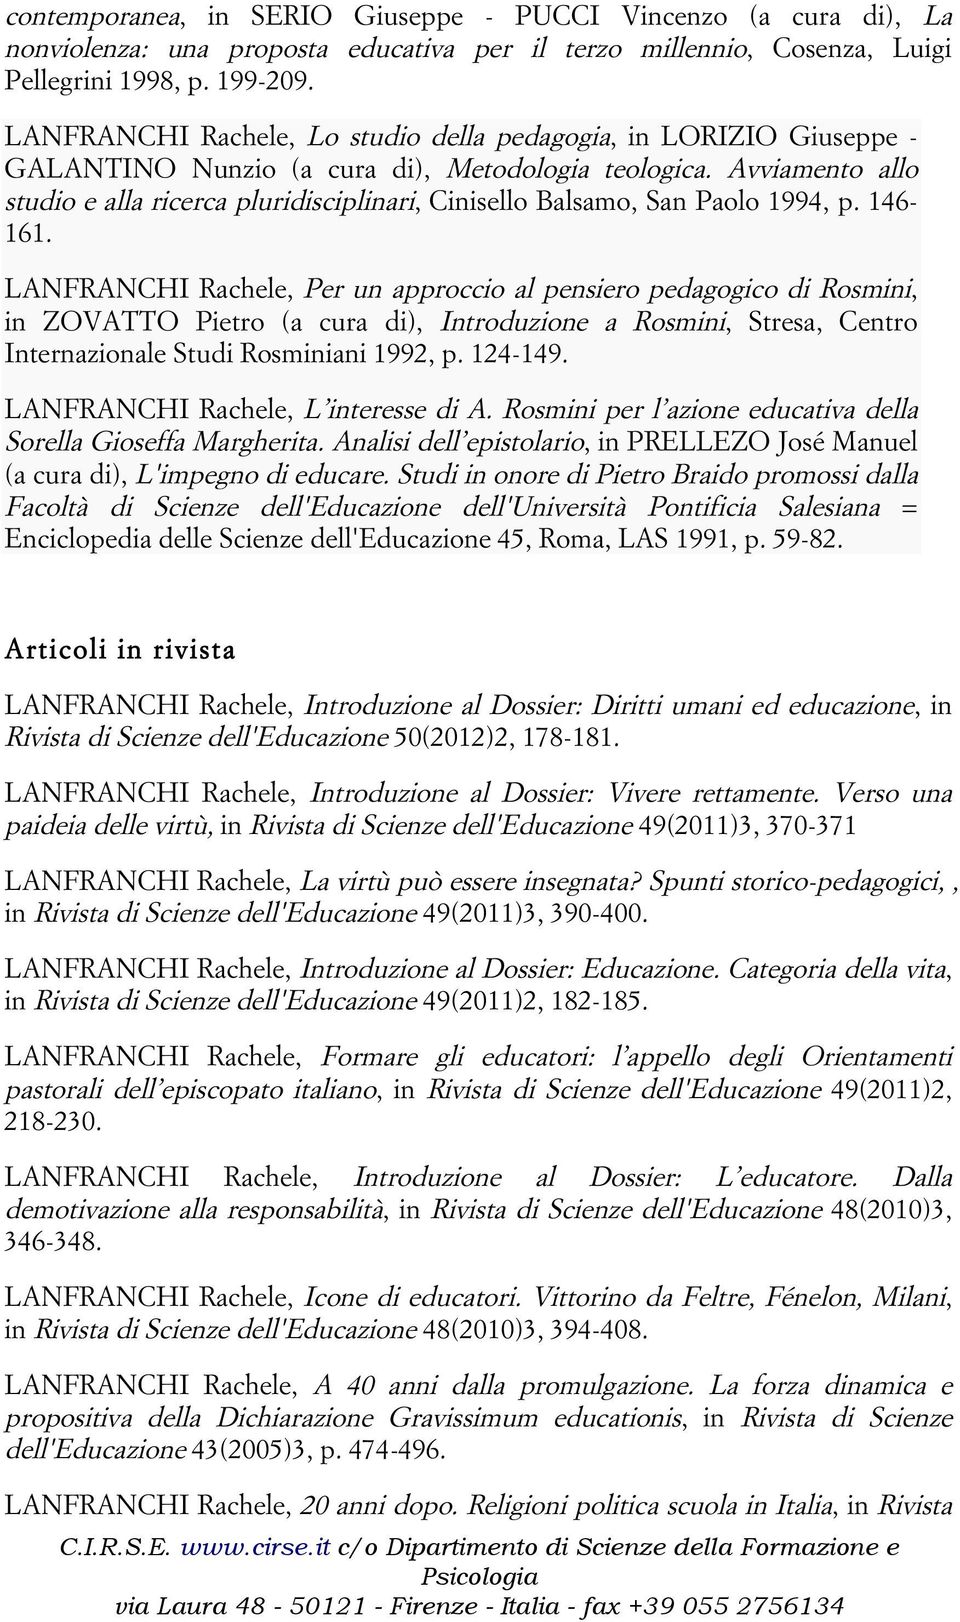 Avviamento allo studio e alla ricerca pluridisciplinari, Cinisello Balsamo, San Paolo 1994, p. 146-161.